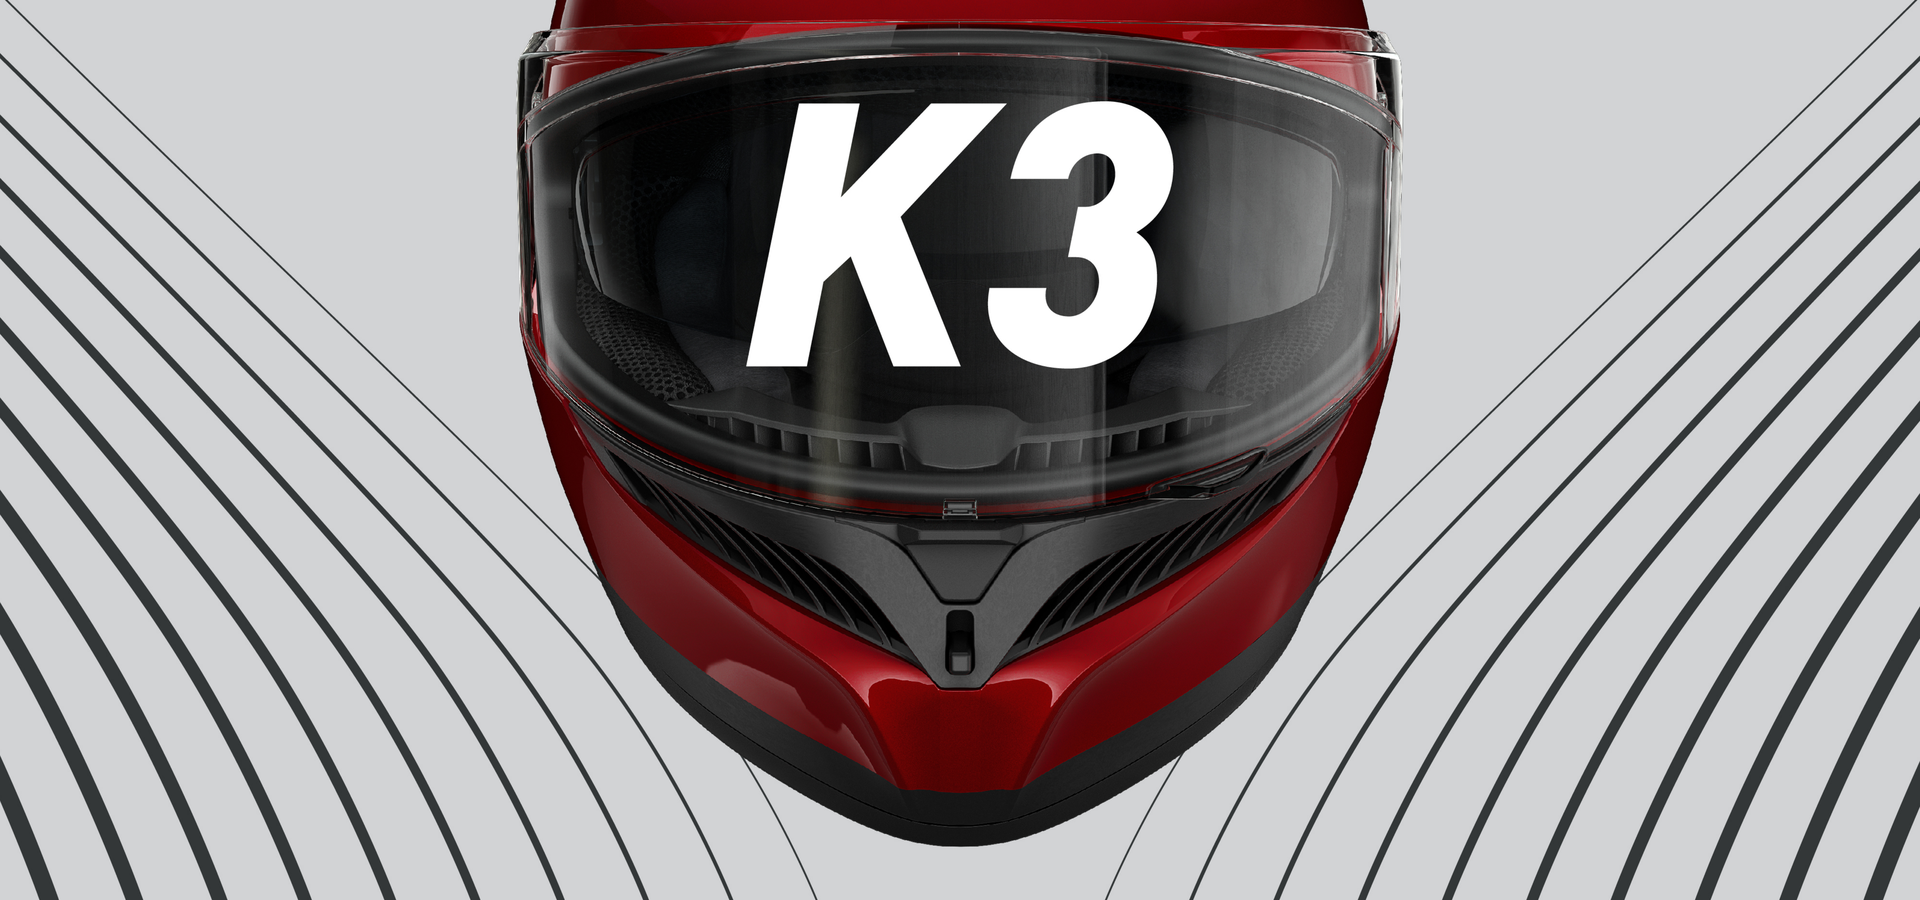  AGV - K3 Kamaleon (1)